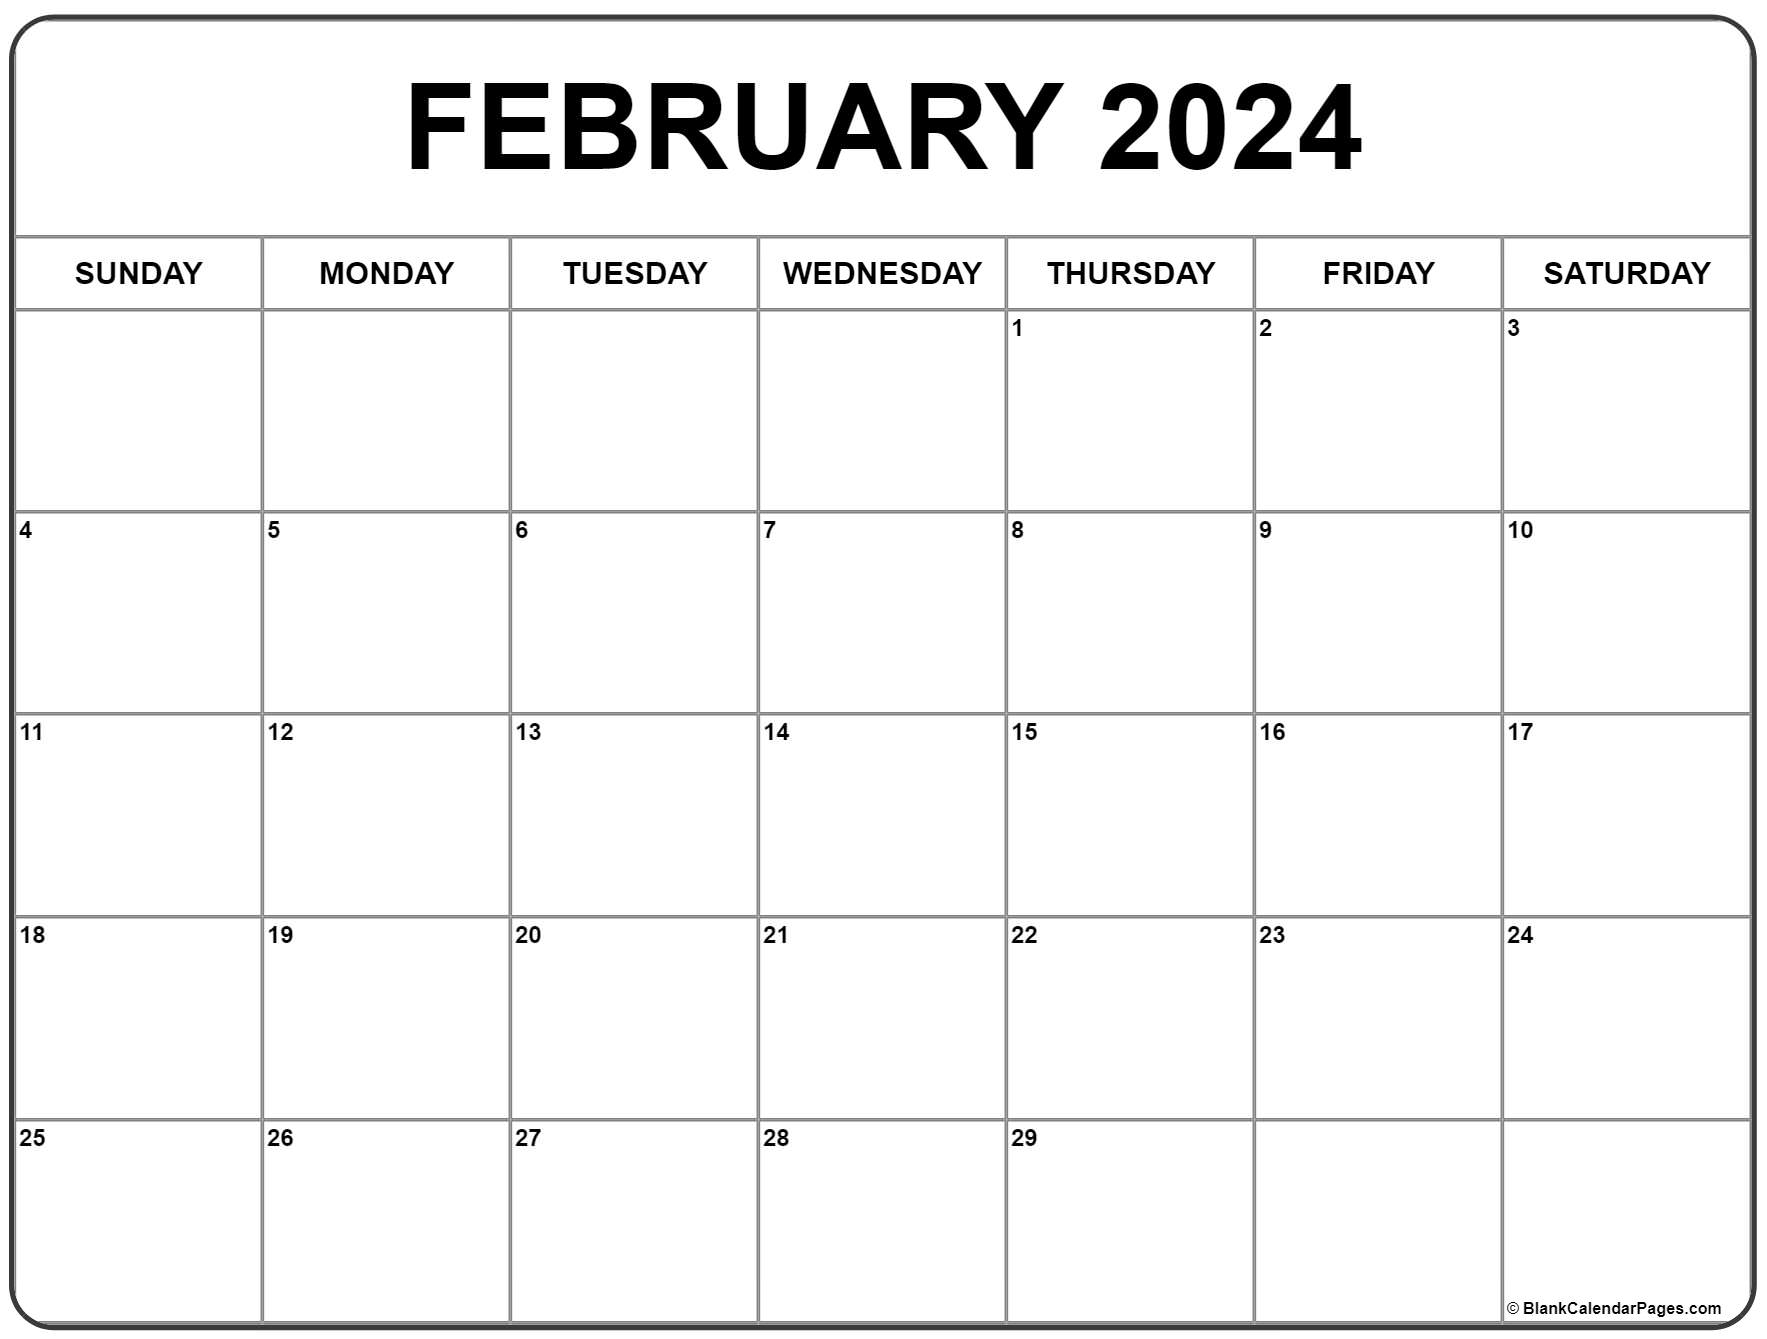 February 2024 Calendar | Free Printable Calendar for February 2024 Free Calendar Printable